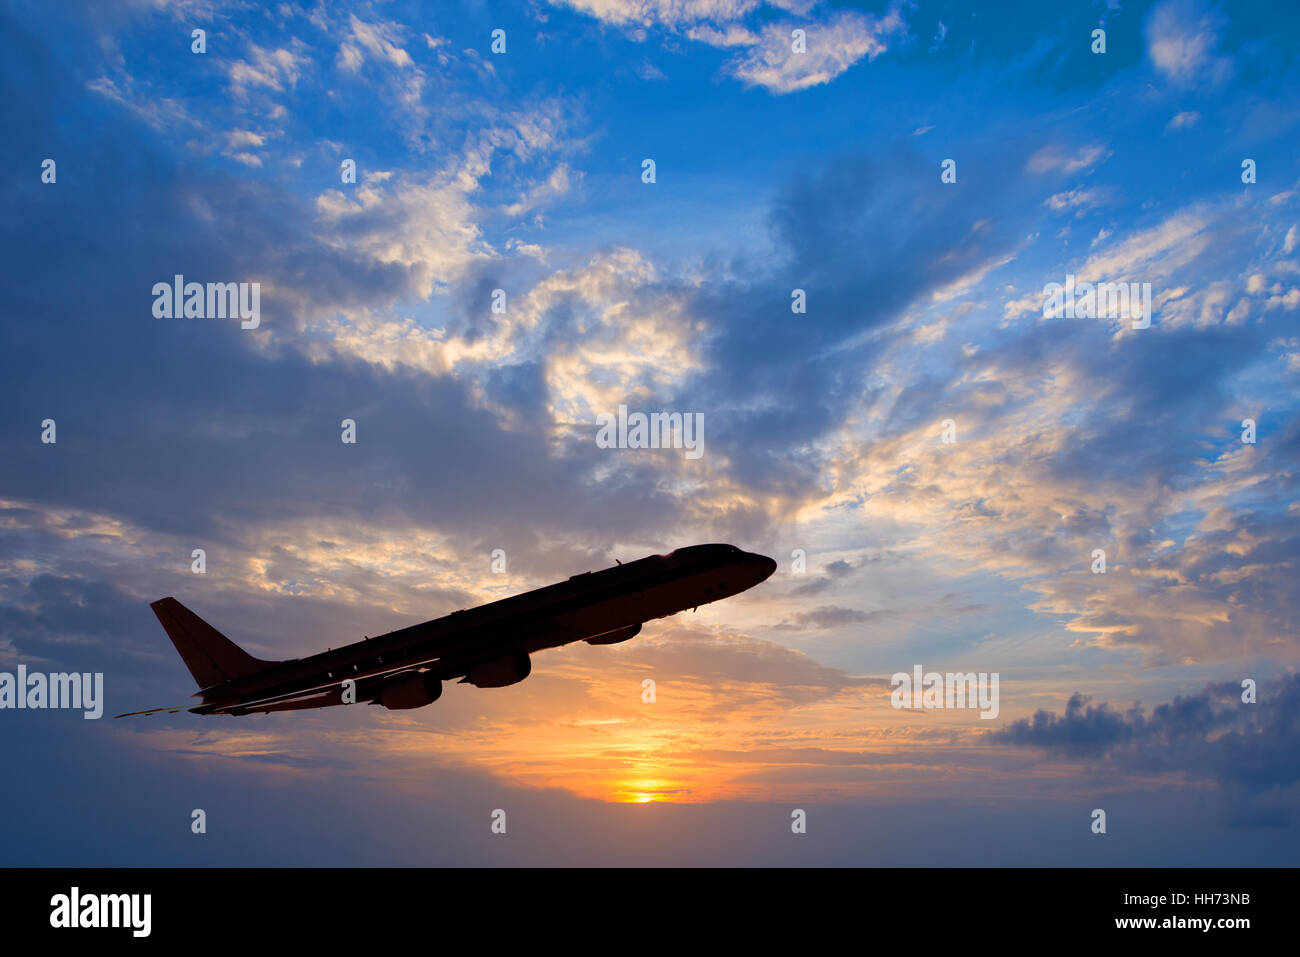 Silhouette von einem Flugzeug abheben, Sonnenuntergang Hintergrund Stockfoto